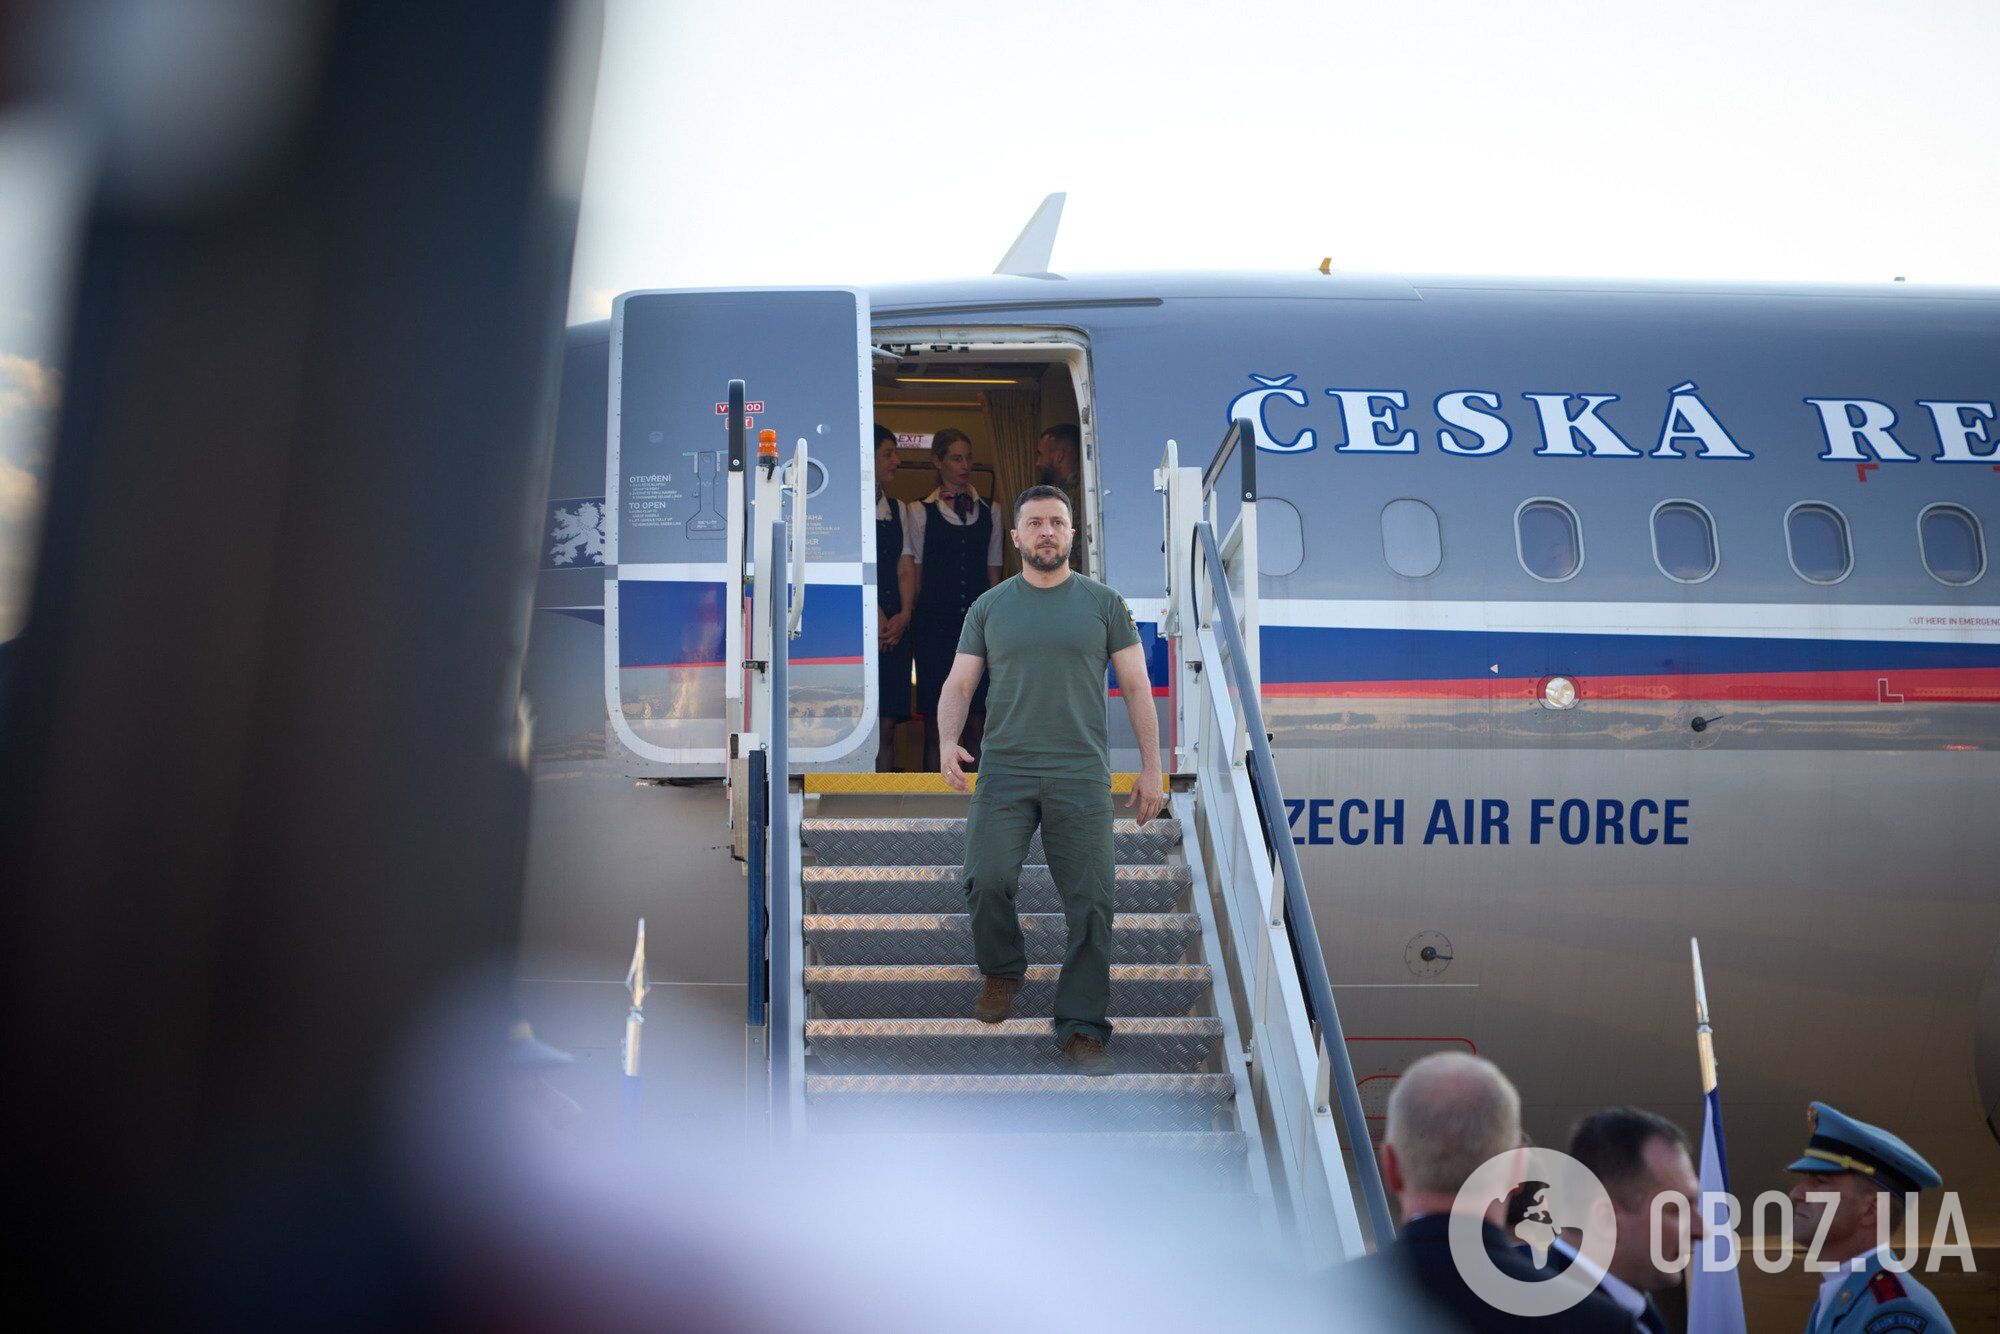 Зеленський здійснив робочий візит до Чехії: подробиці поїздки. Фото і відео